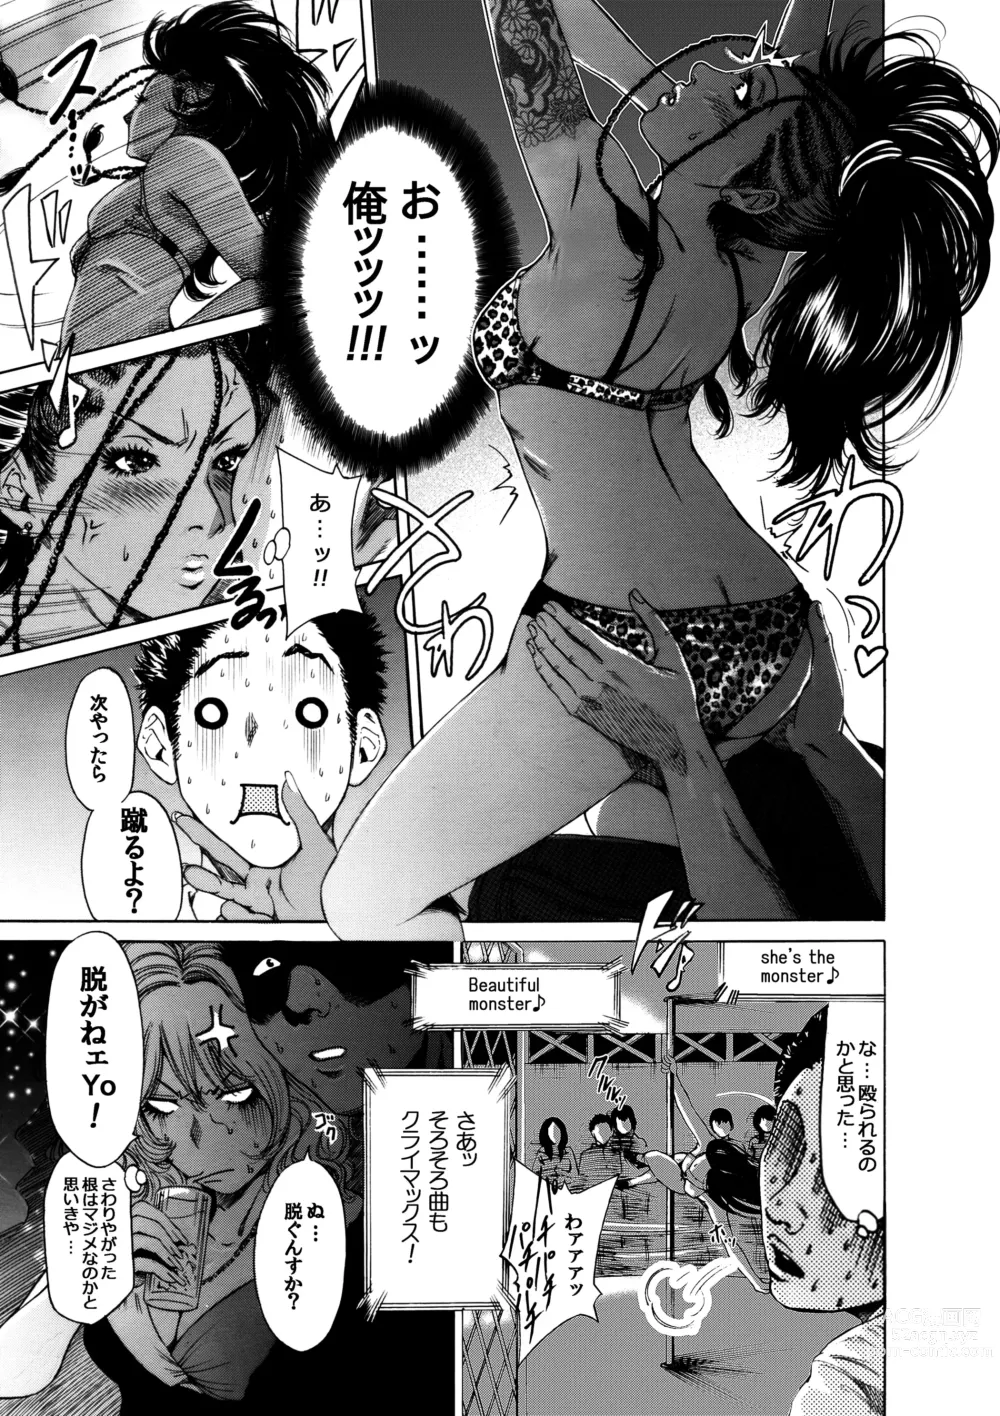 Page 15 of doujinshi Okumori Boy Shoki Ero Manga-shuu “San-biki ga yaru”